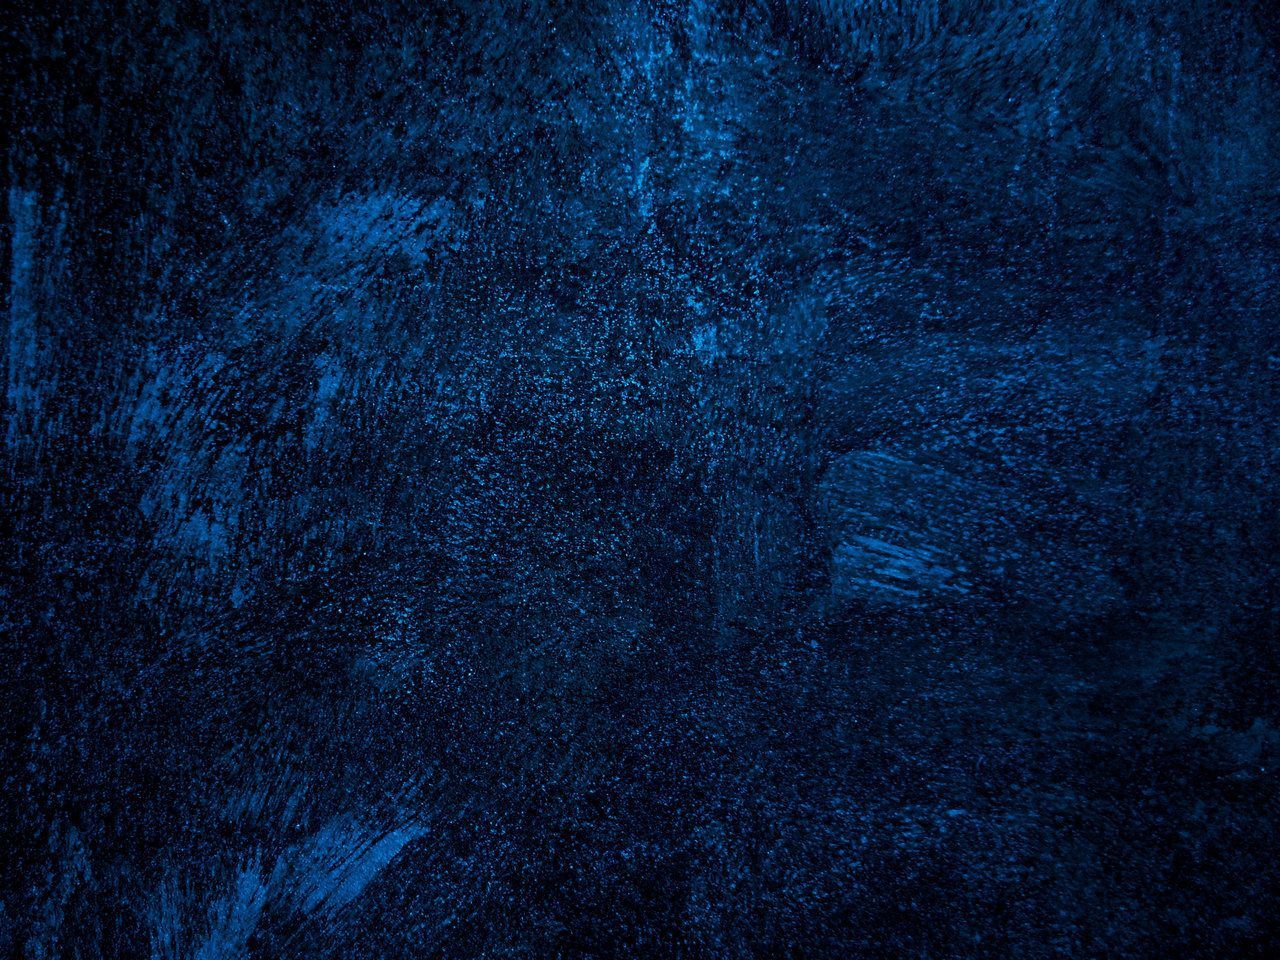 Với những hình nền dòng Dark Blue Texture Wallpapers, bạn sẽ được đắm mình trong một không gian thật sự tuyệt vời. Sức hút của những hình nền này có thể giúp bạn giảm áp lực và trở nên thư thái hơn, đặc biệt để tăng cường khả năng tập trung khi làm việc. Hãy dành vài phút để thưởng thức những hình nền đầy màu sắc và độc đáo này.